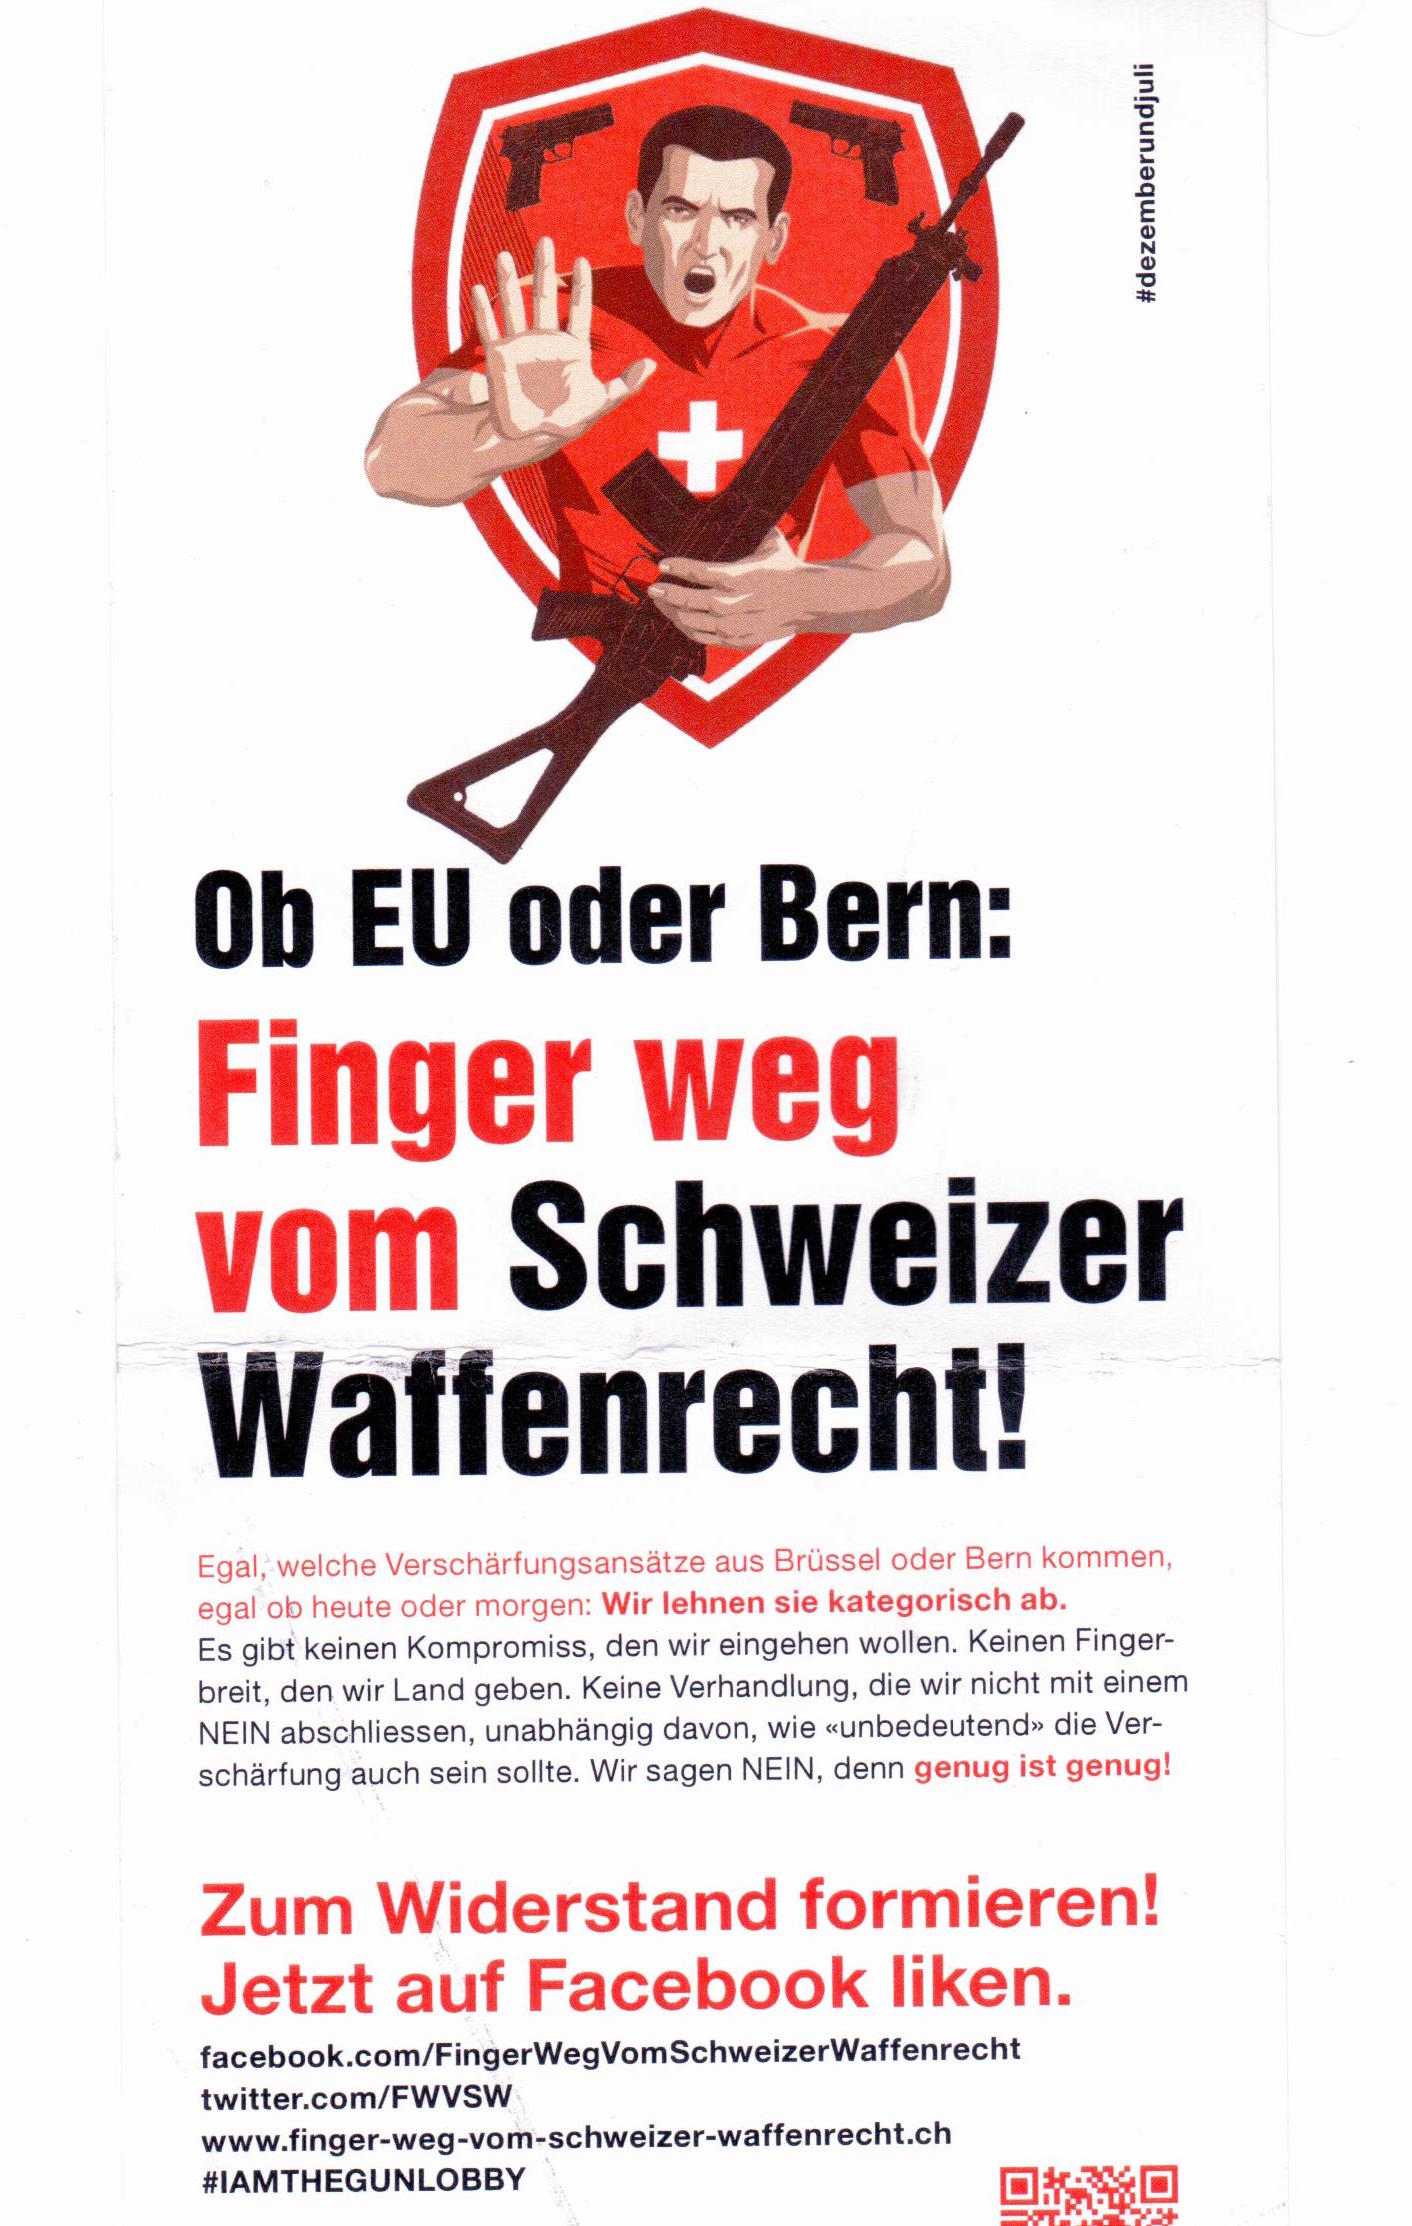 Dem Typen mit Gewehr sollte man nicht wiedersprechen: Finger weg vom Schweizer Waffengesetz fordert der Flyer.